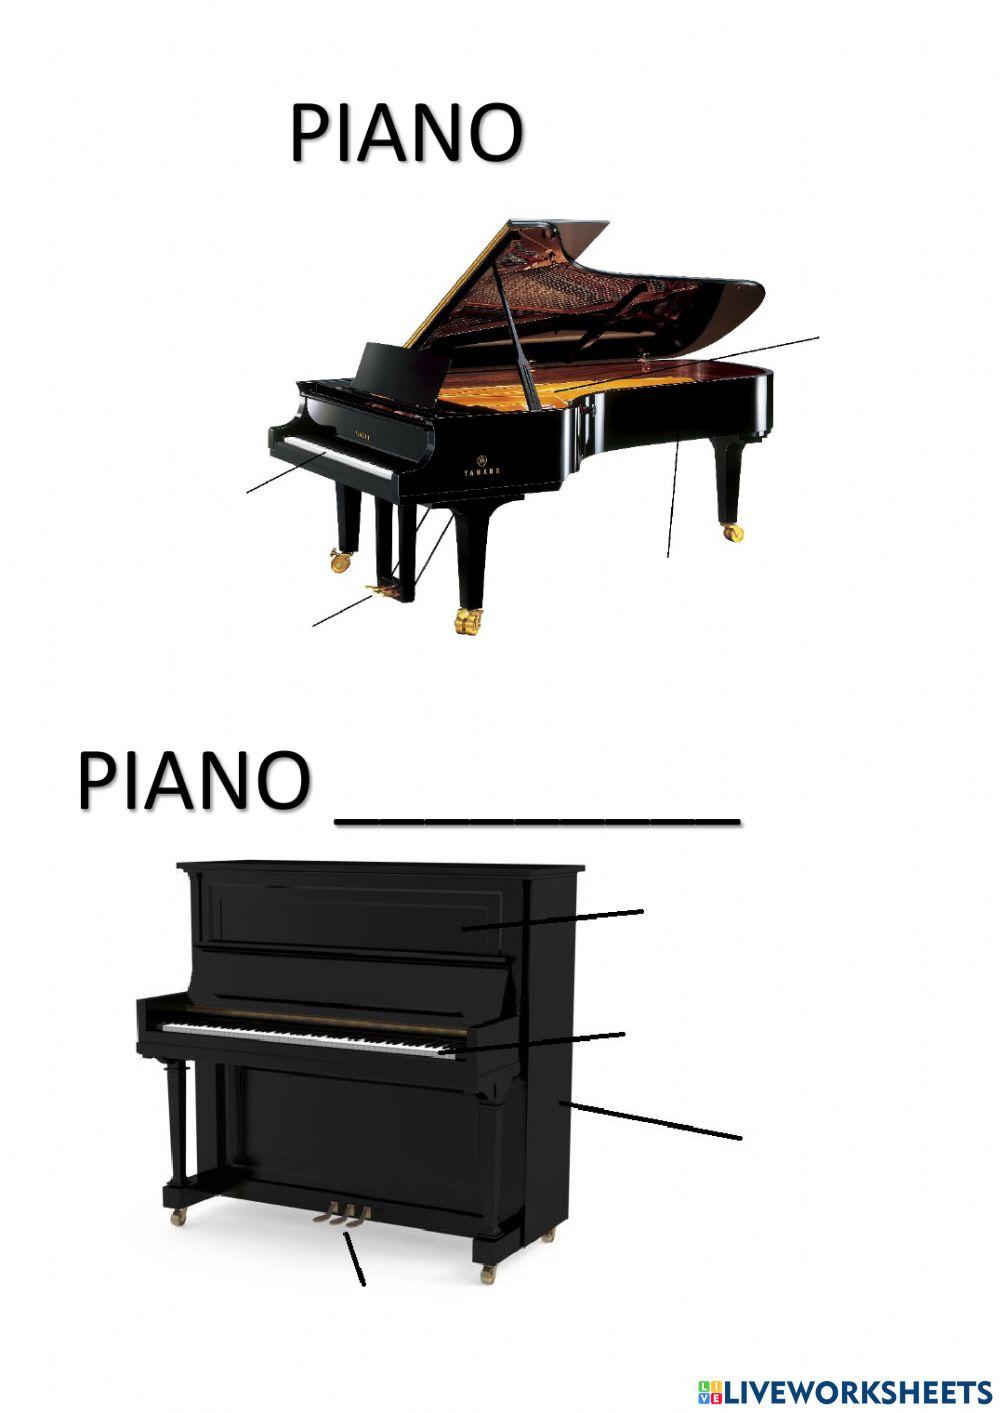 El piano